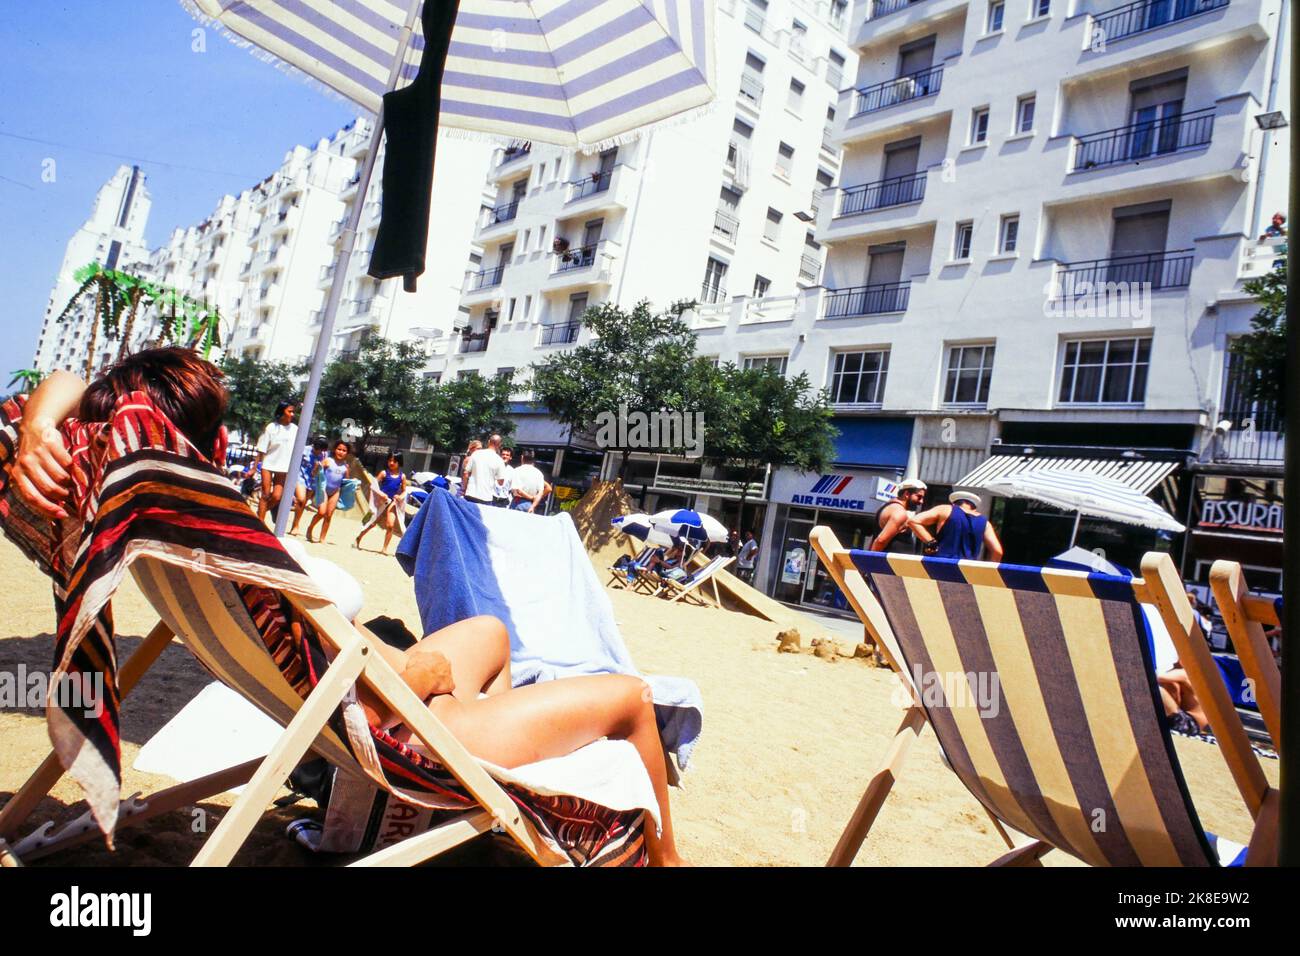 Una playa de arena en Gratte-ciel, instalación urbana, Villeurbanne, Ródano, Francia, 1995 Foto de stock